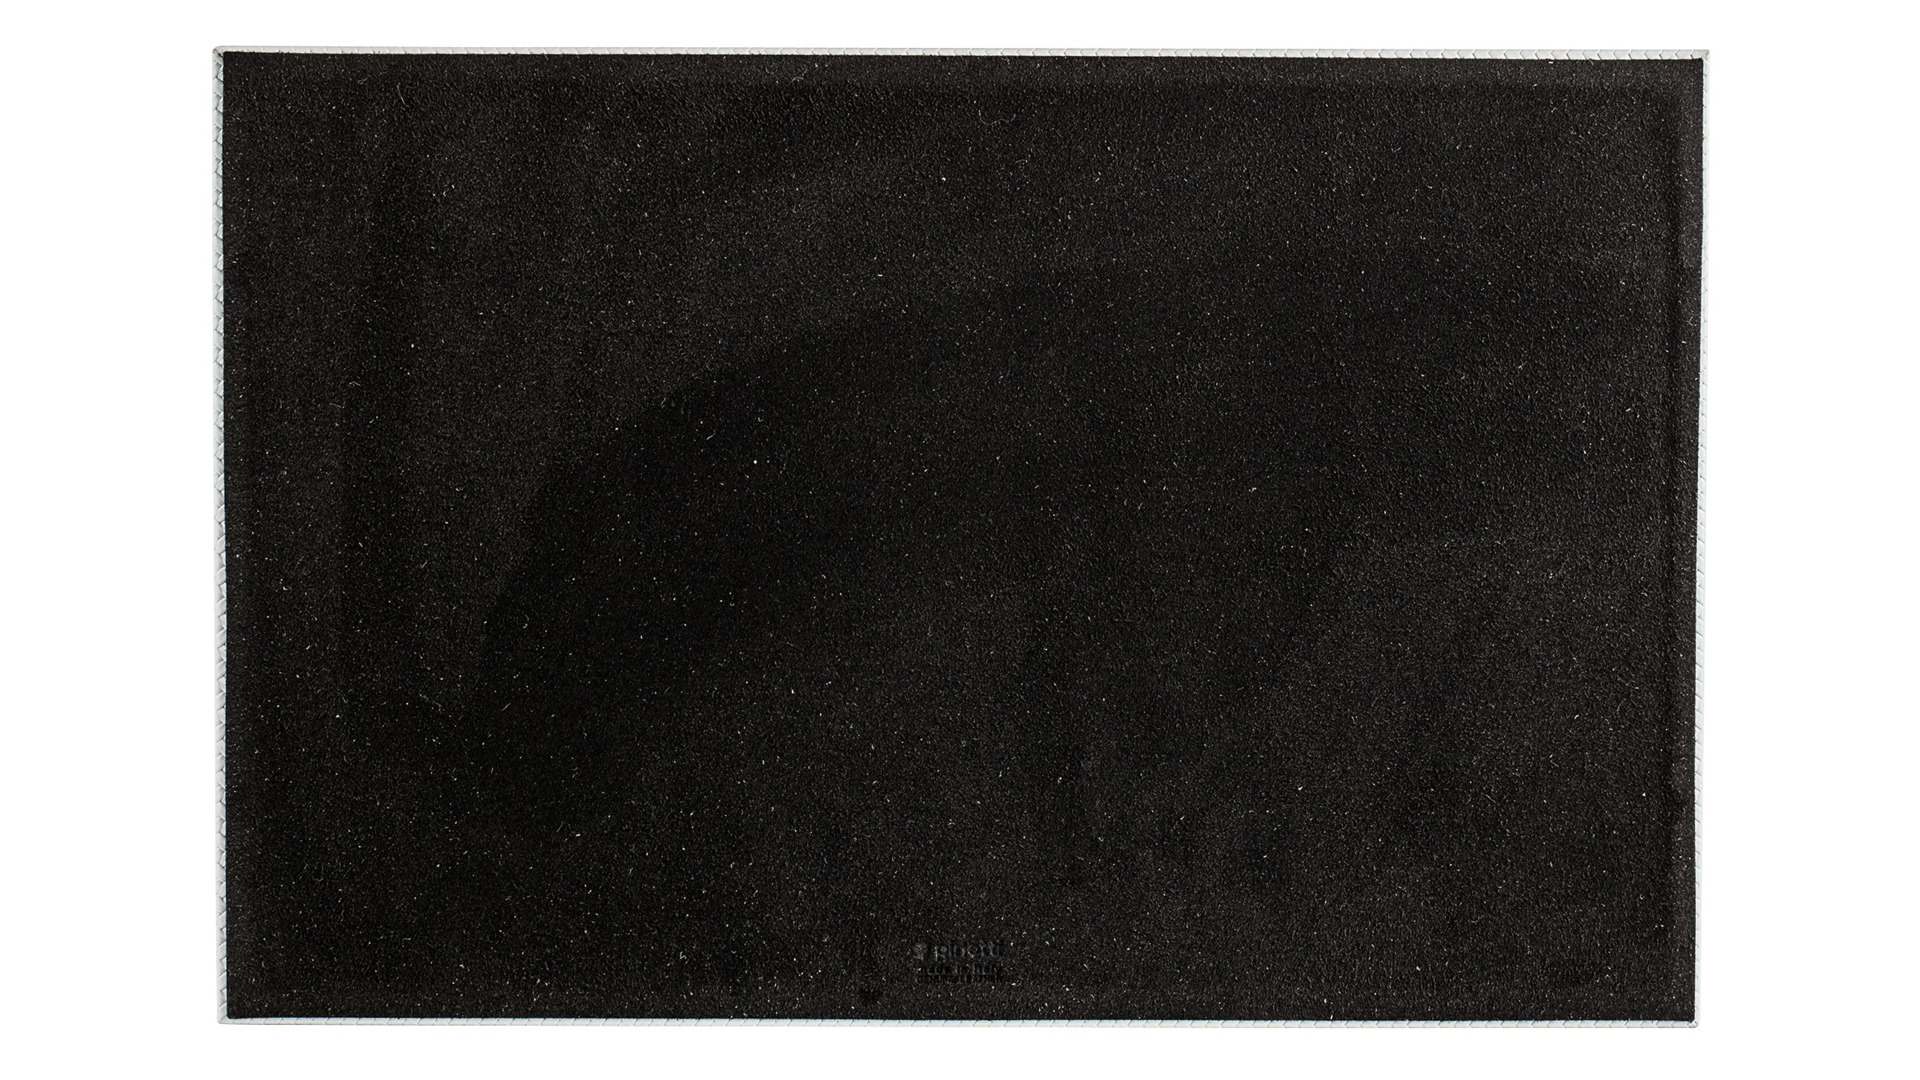 Поднос прямоугольный Pinetti Фиренз 29,5х45 см, серый